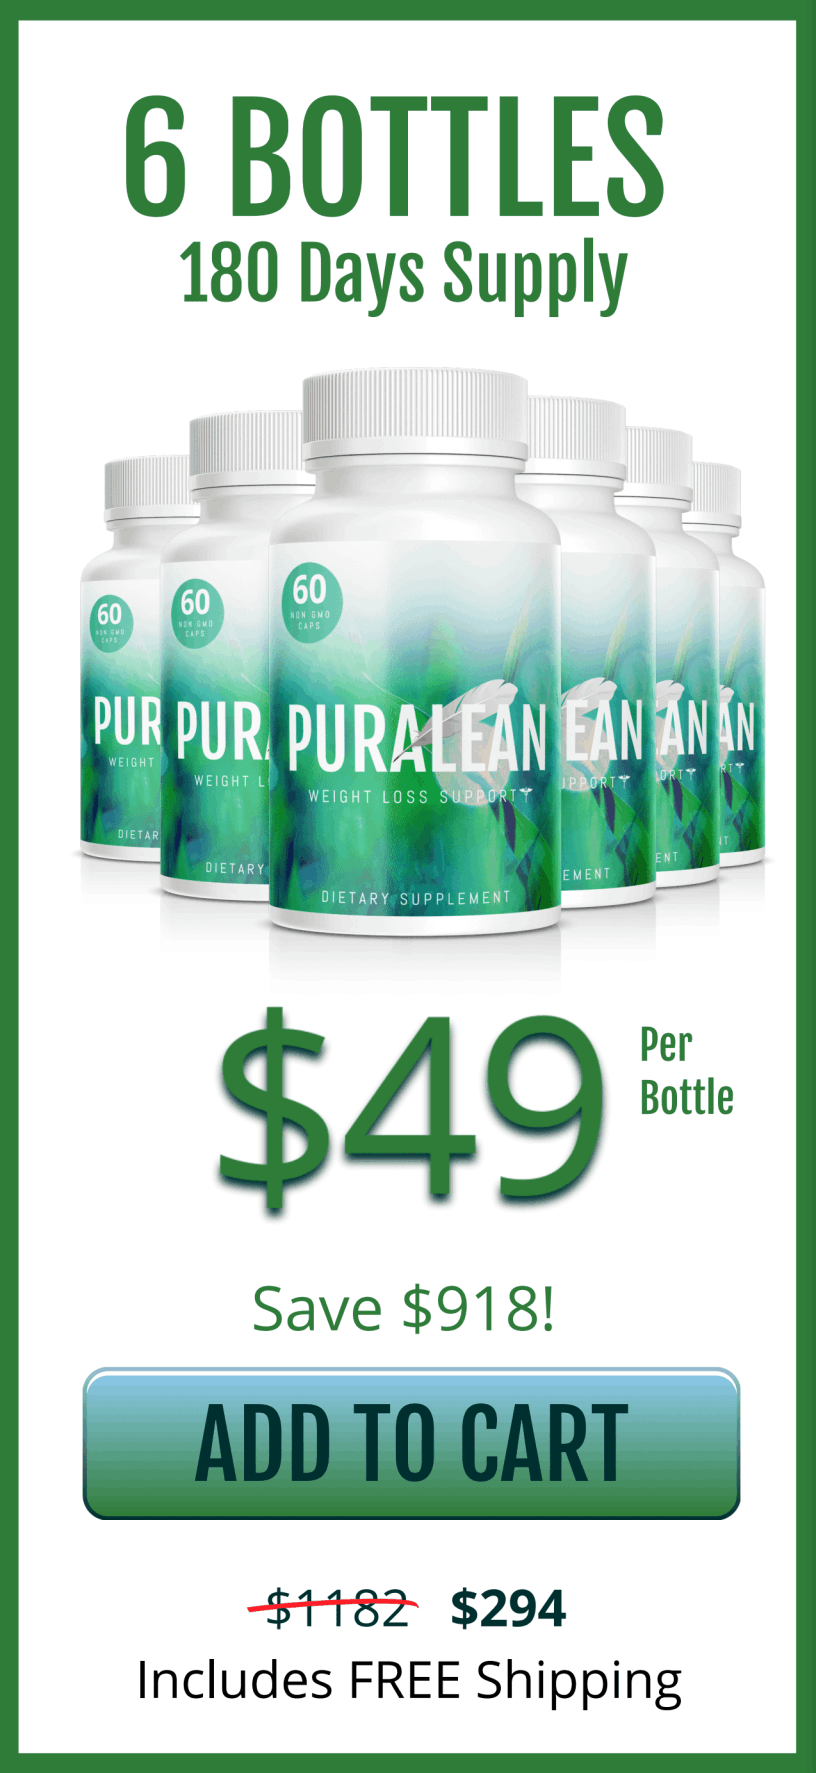 puralean $49 bottle